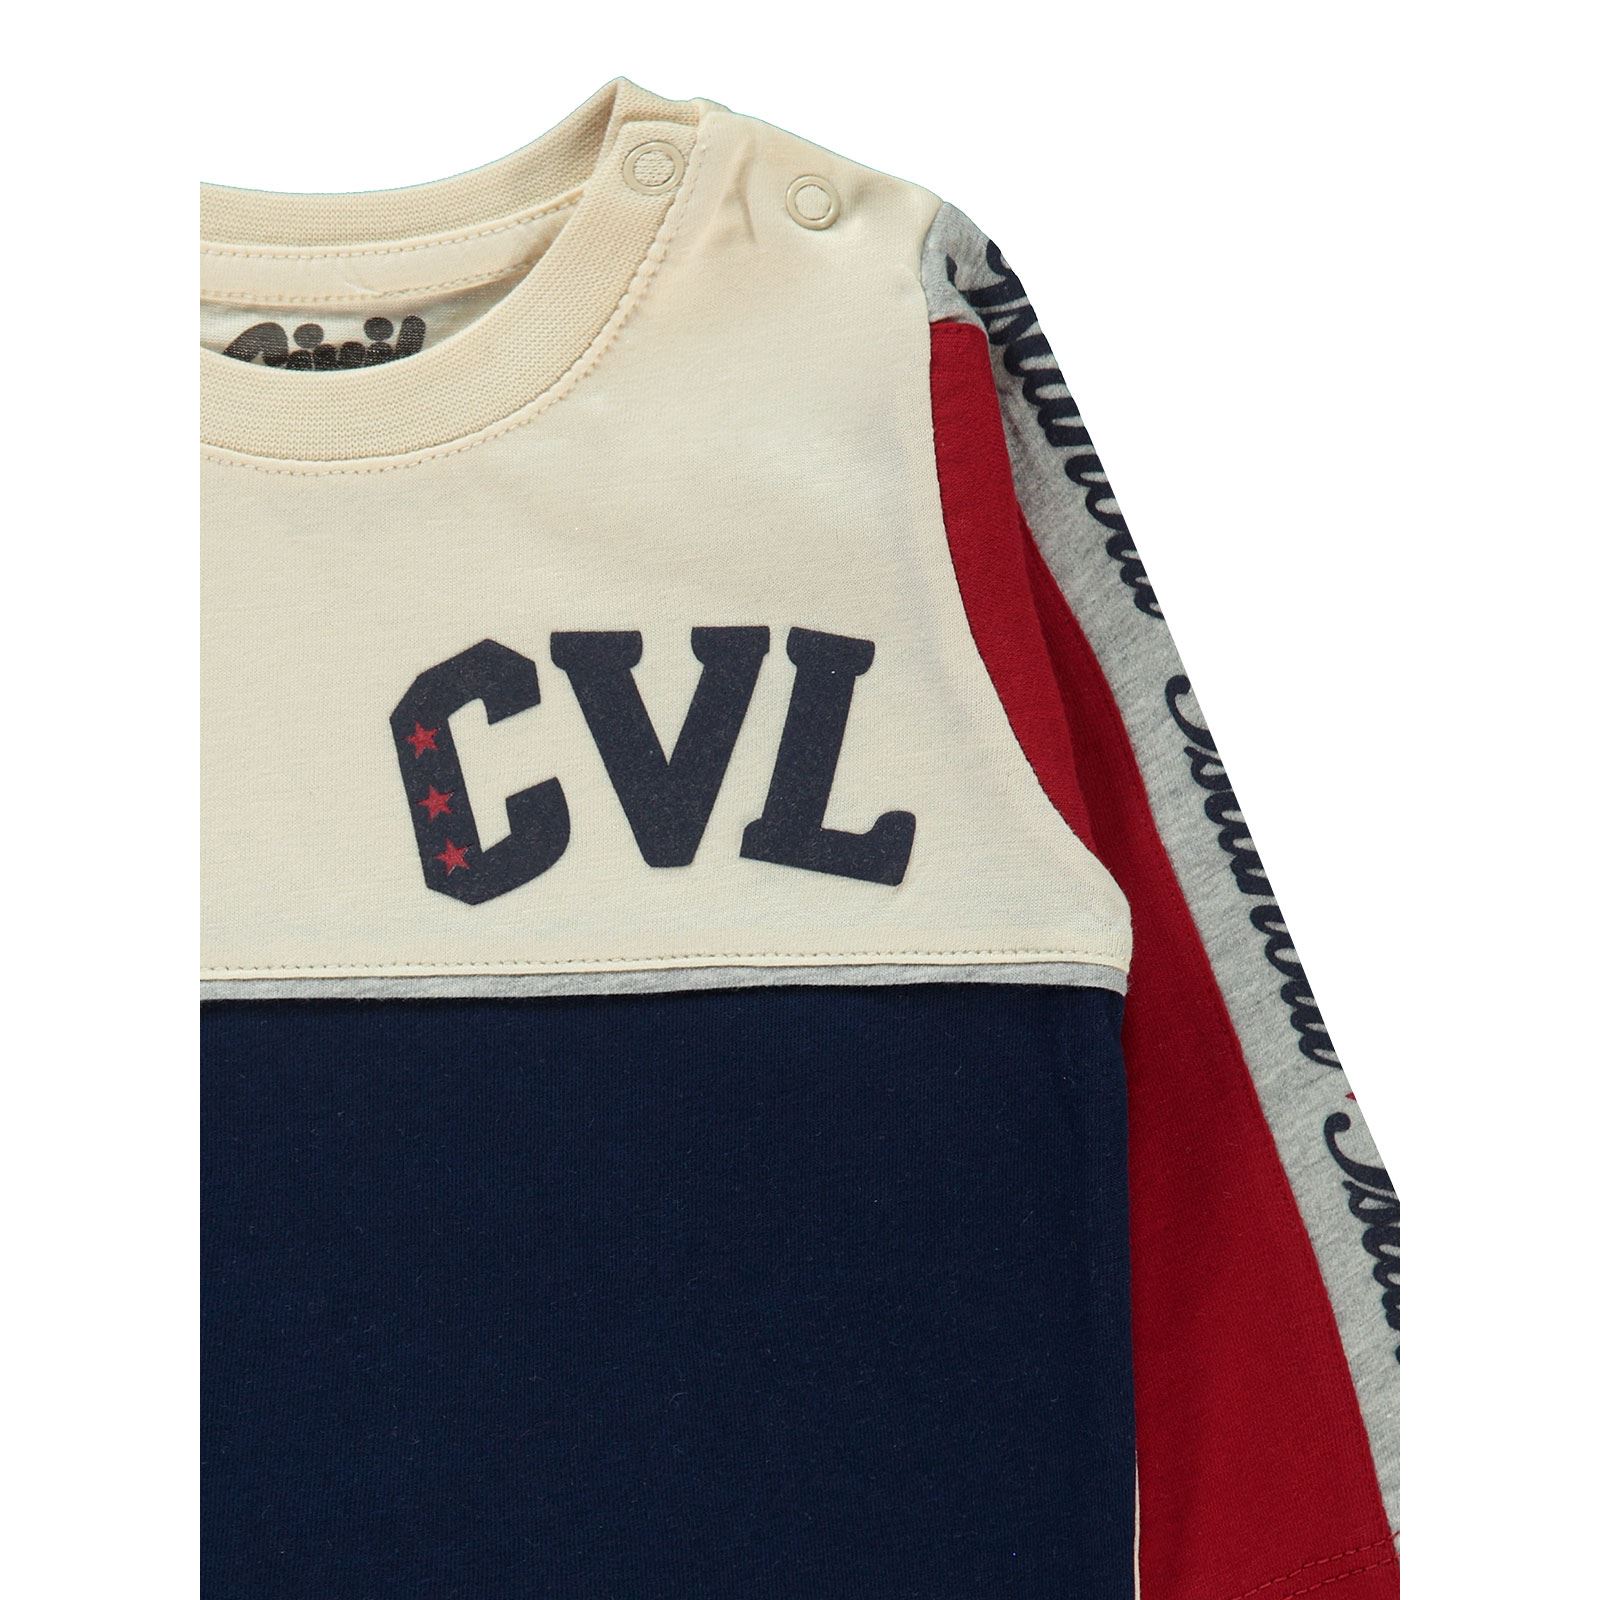 Civil Baby Erkek Bebek Sweatshirt 6-18 Ay Kırmızı